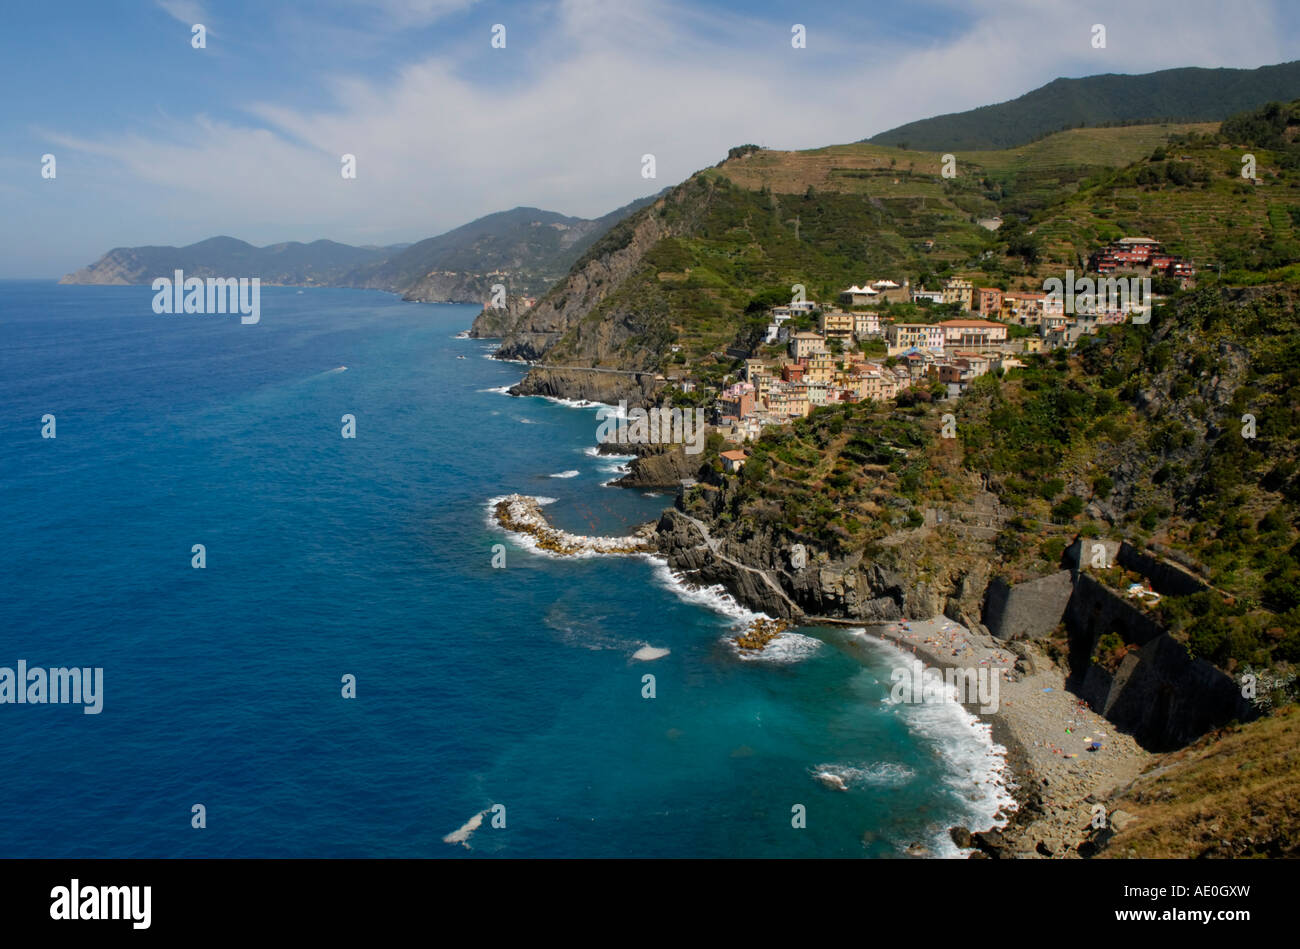 Die Cinque Terre Küste Richtung Norden.  Das erste Dorf gesehen ist Riomaggiore mit seinem Strand im Vordergrund. Stockfoto